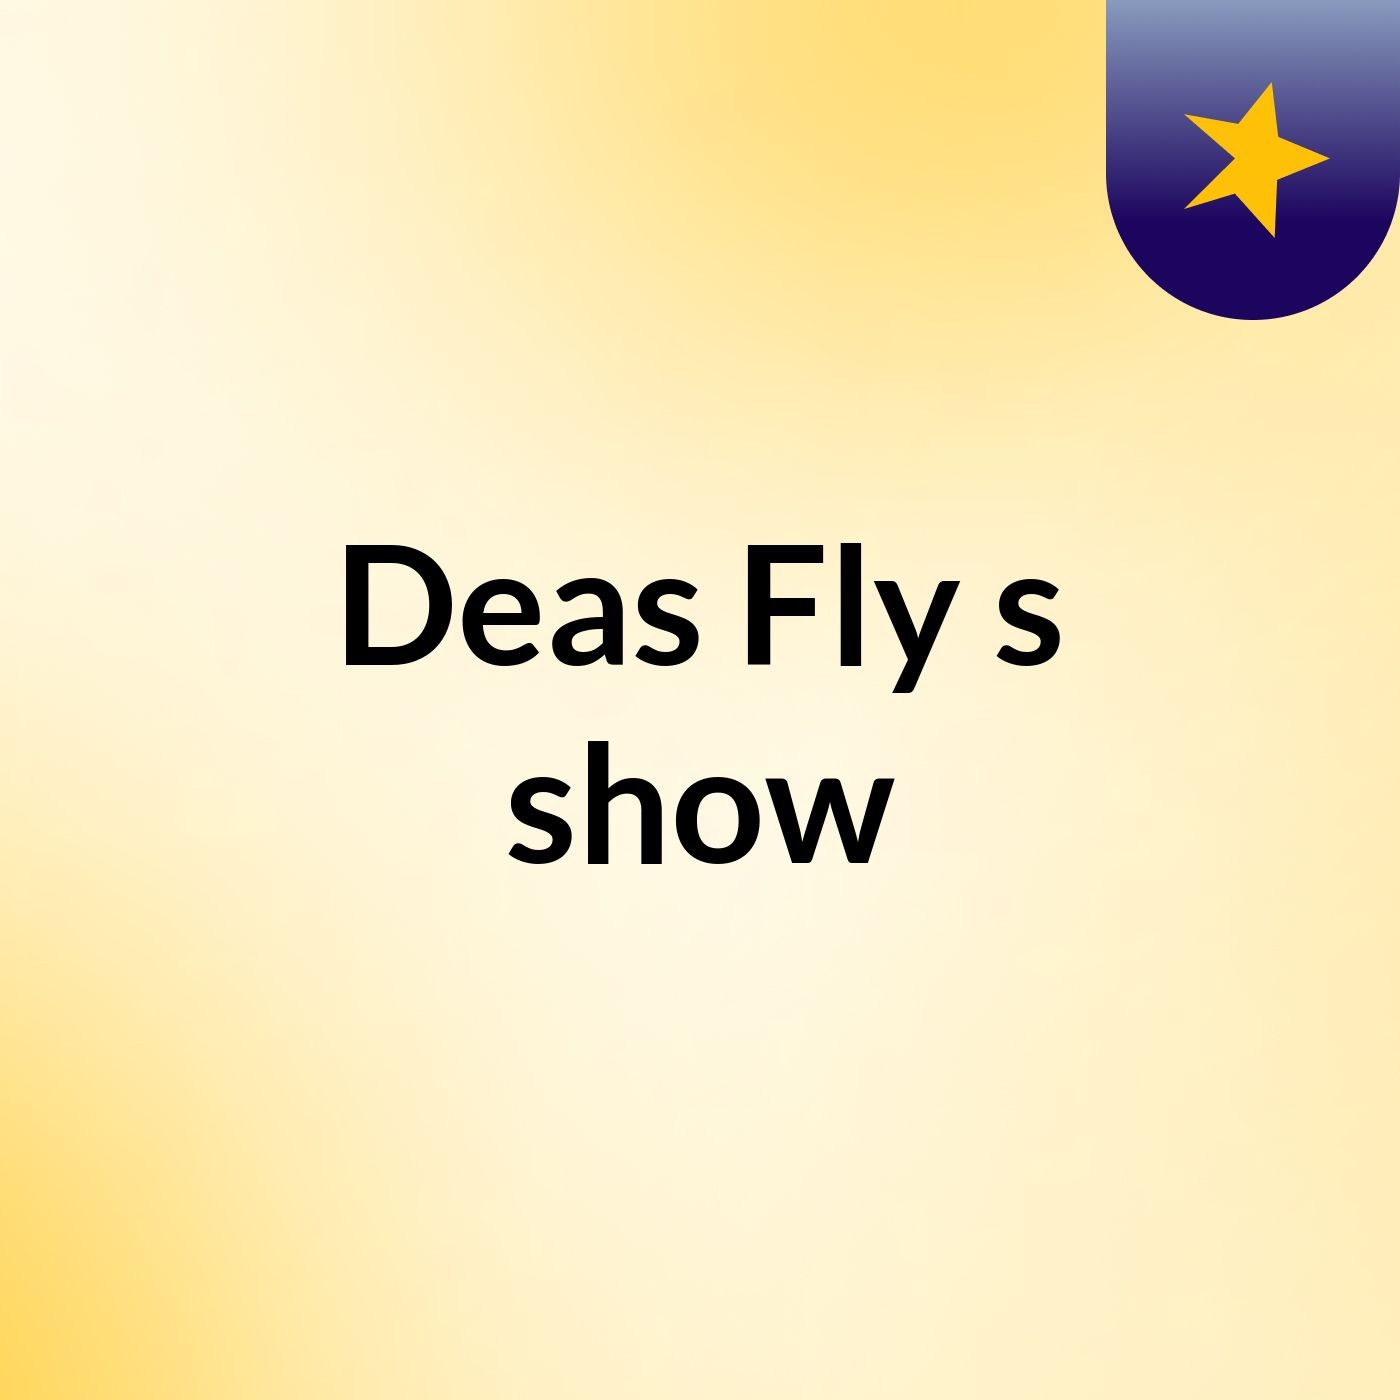 Deas Fly's show